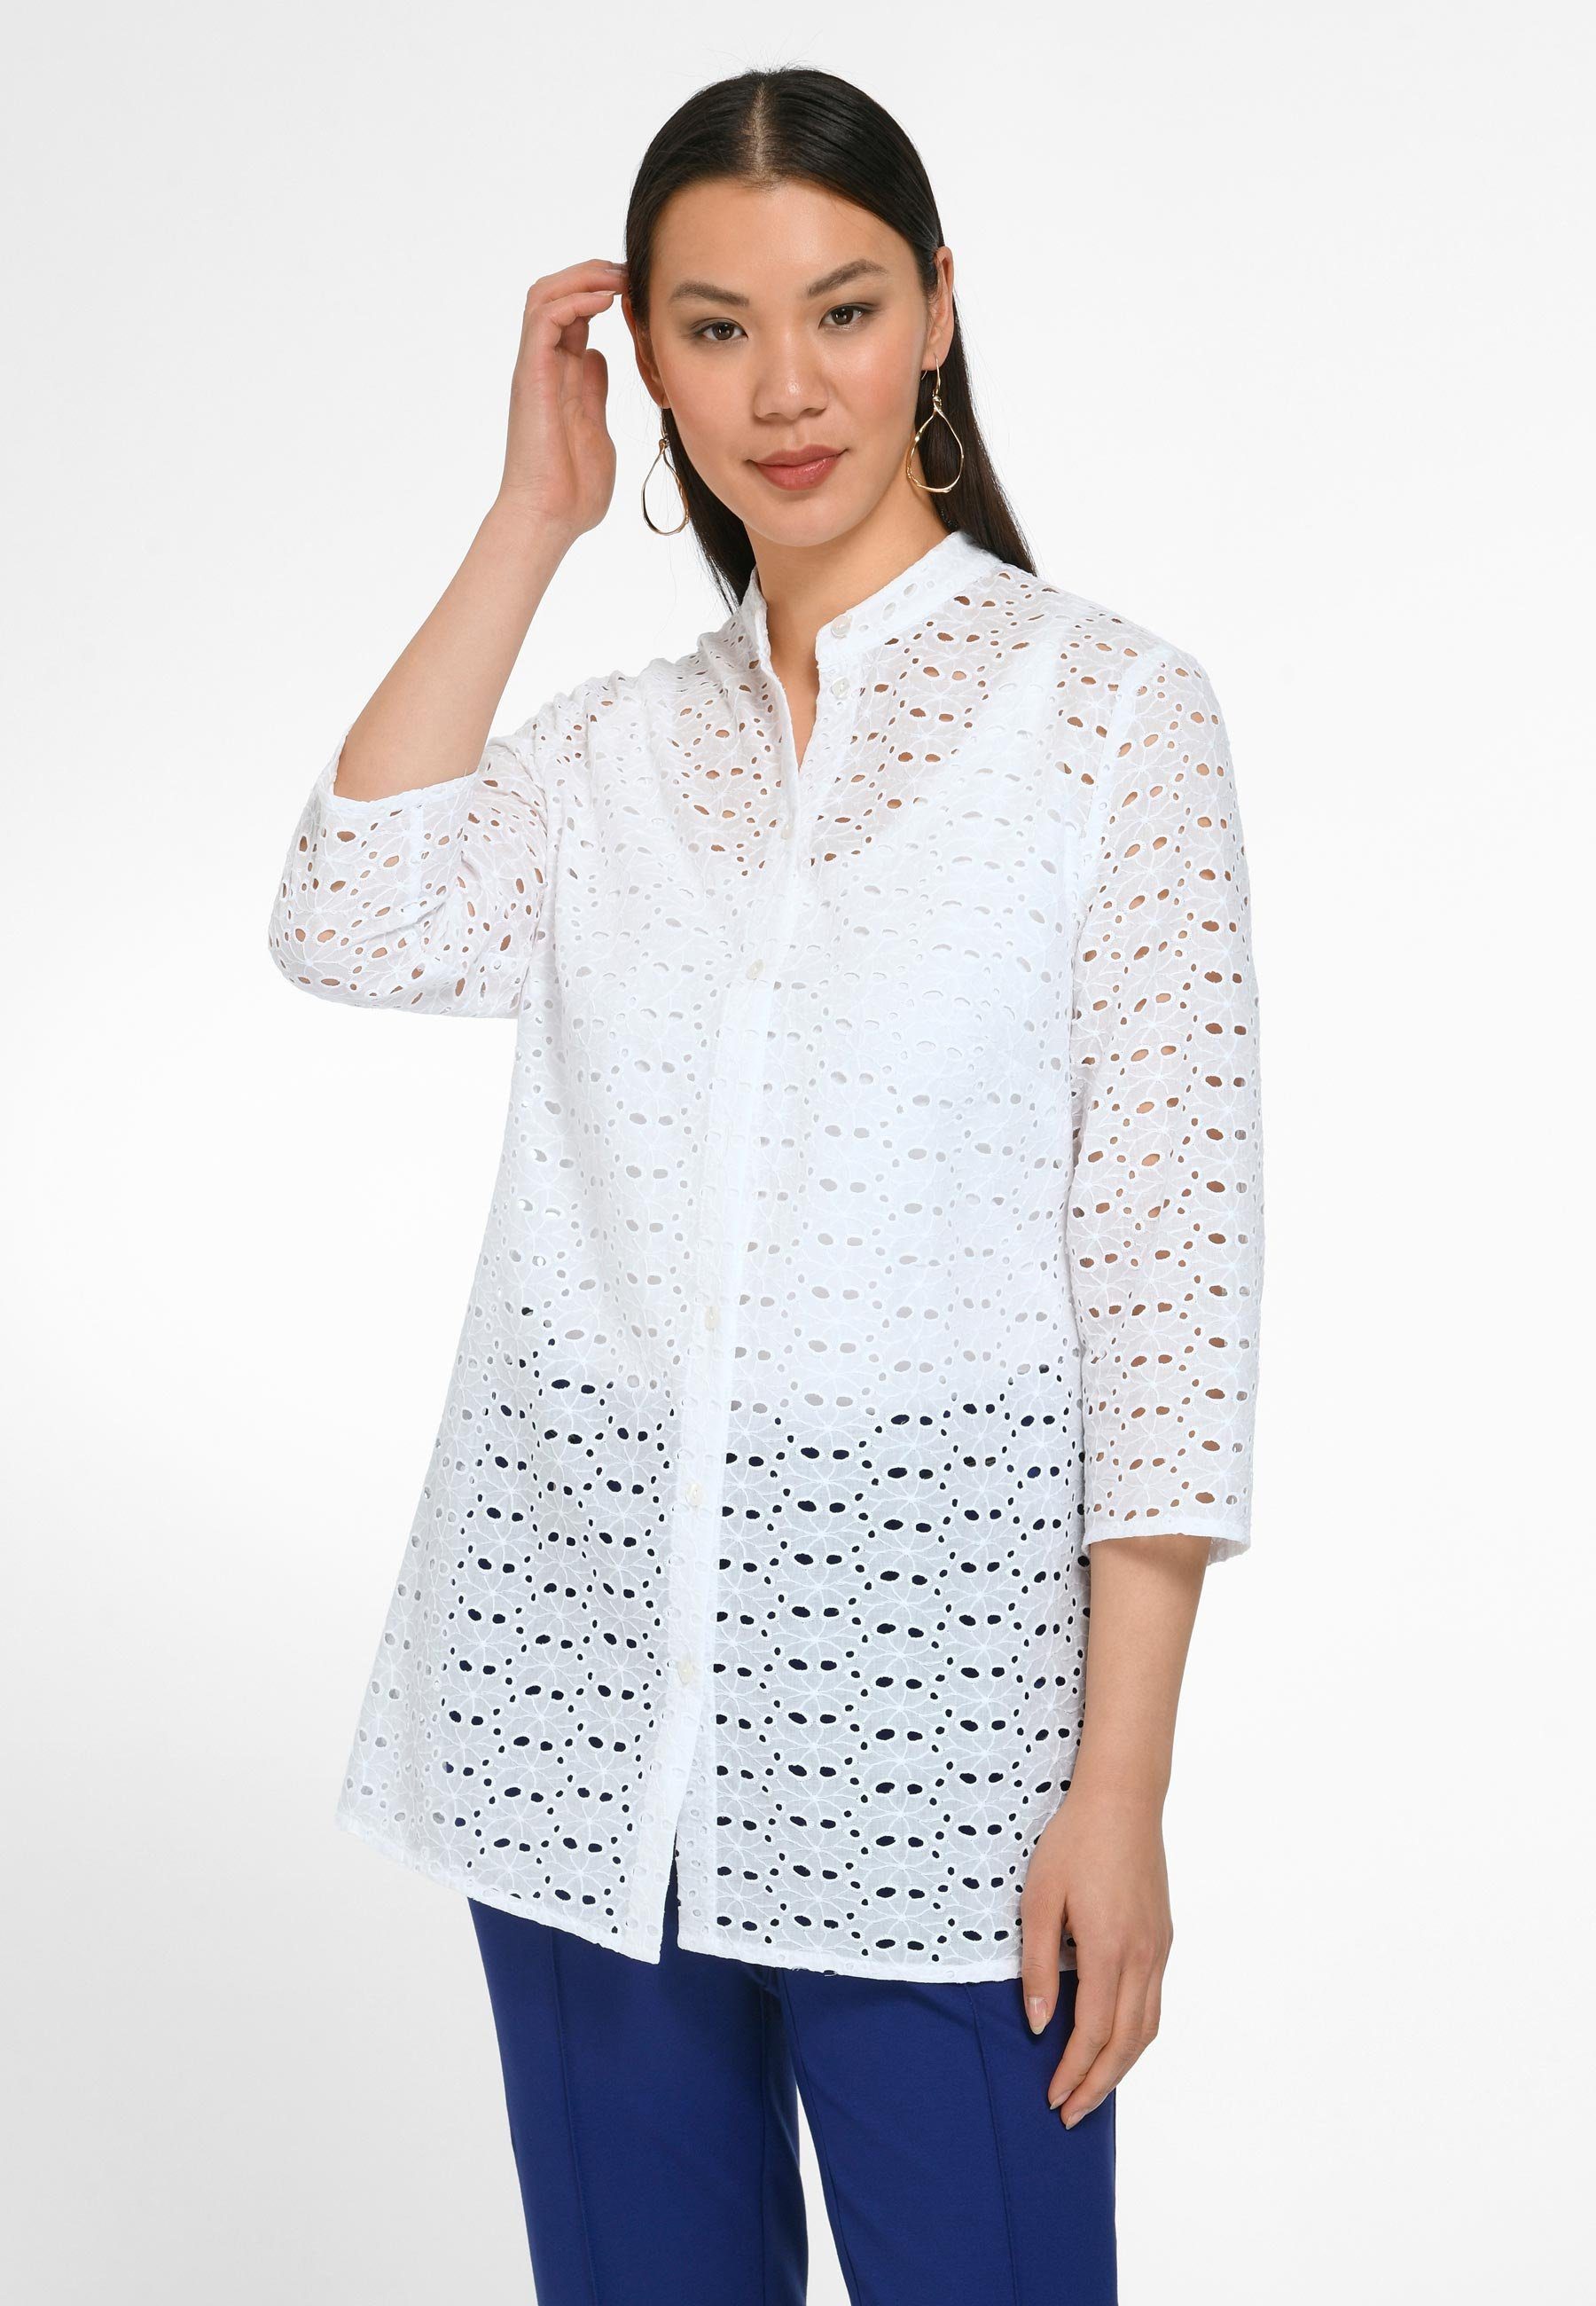 Anna Aura Klassische Design modernem mit Cotton Bluse